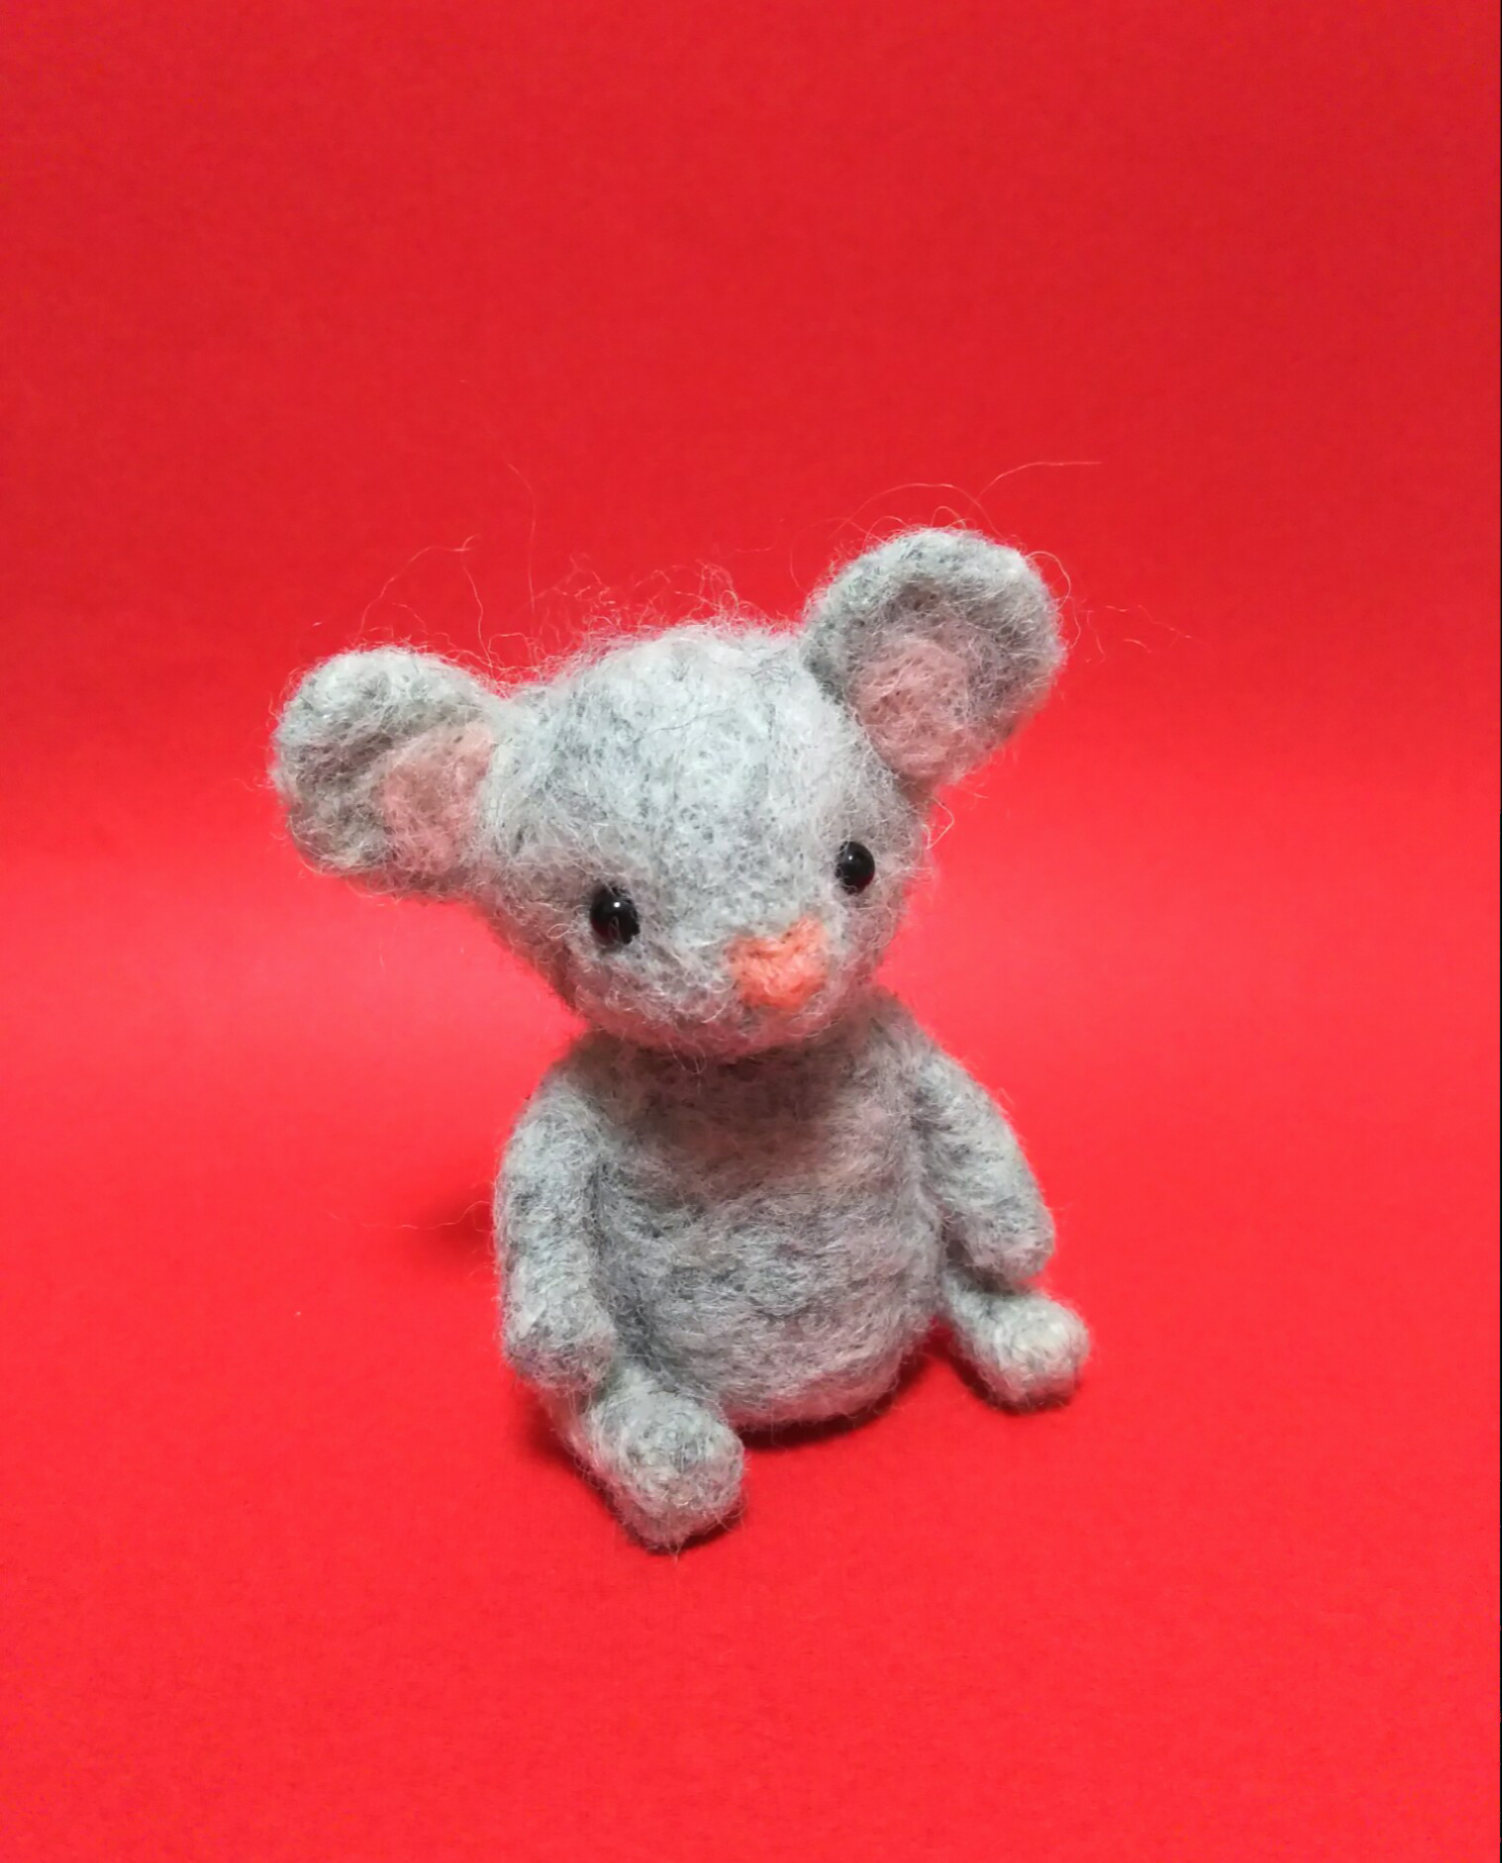 ネズミ色のネズミさん Iichi ハンドメイド クラフト作品 手仕事品の通販